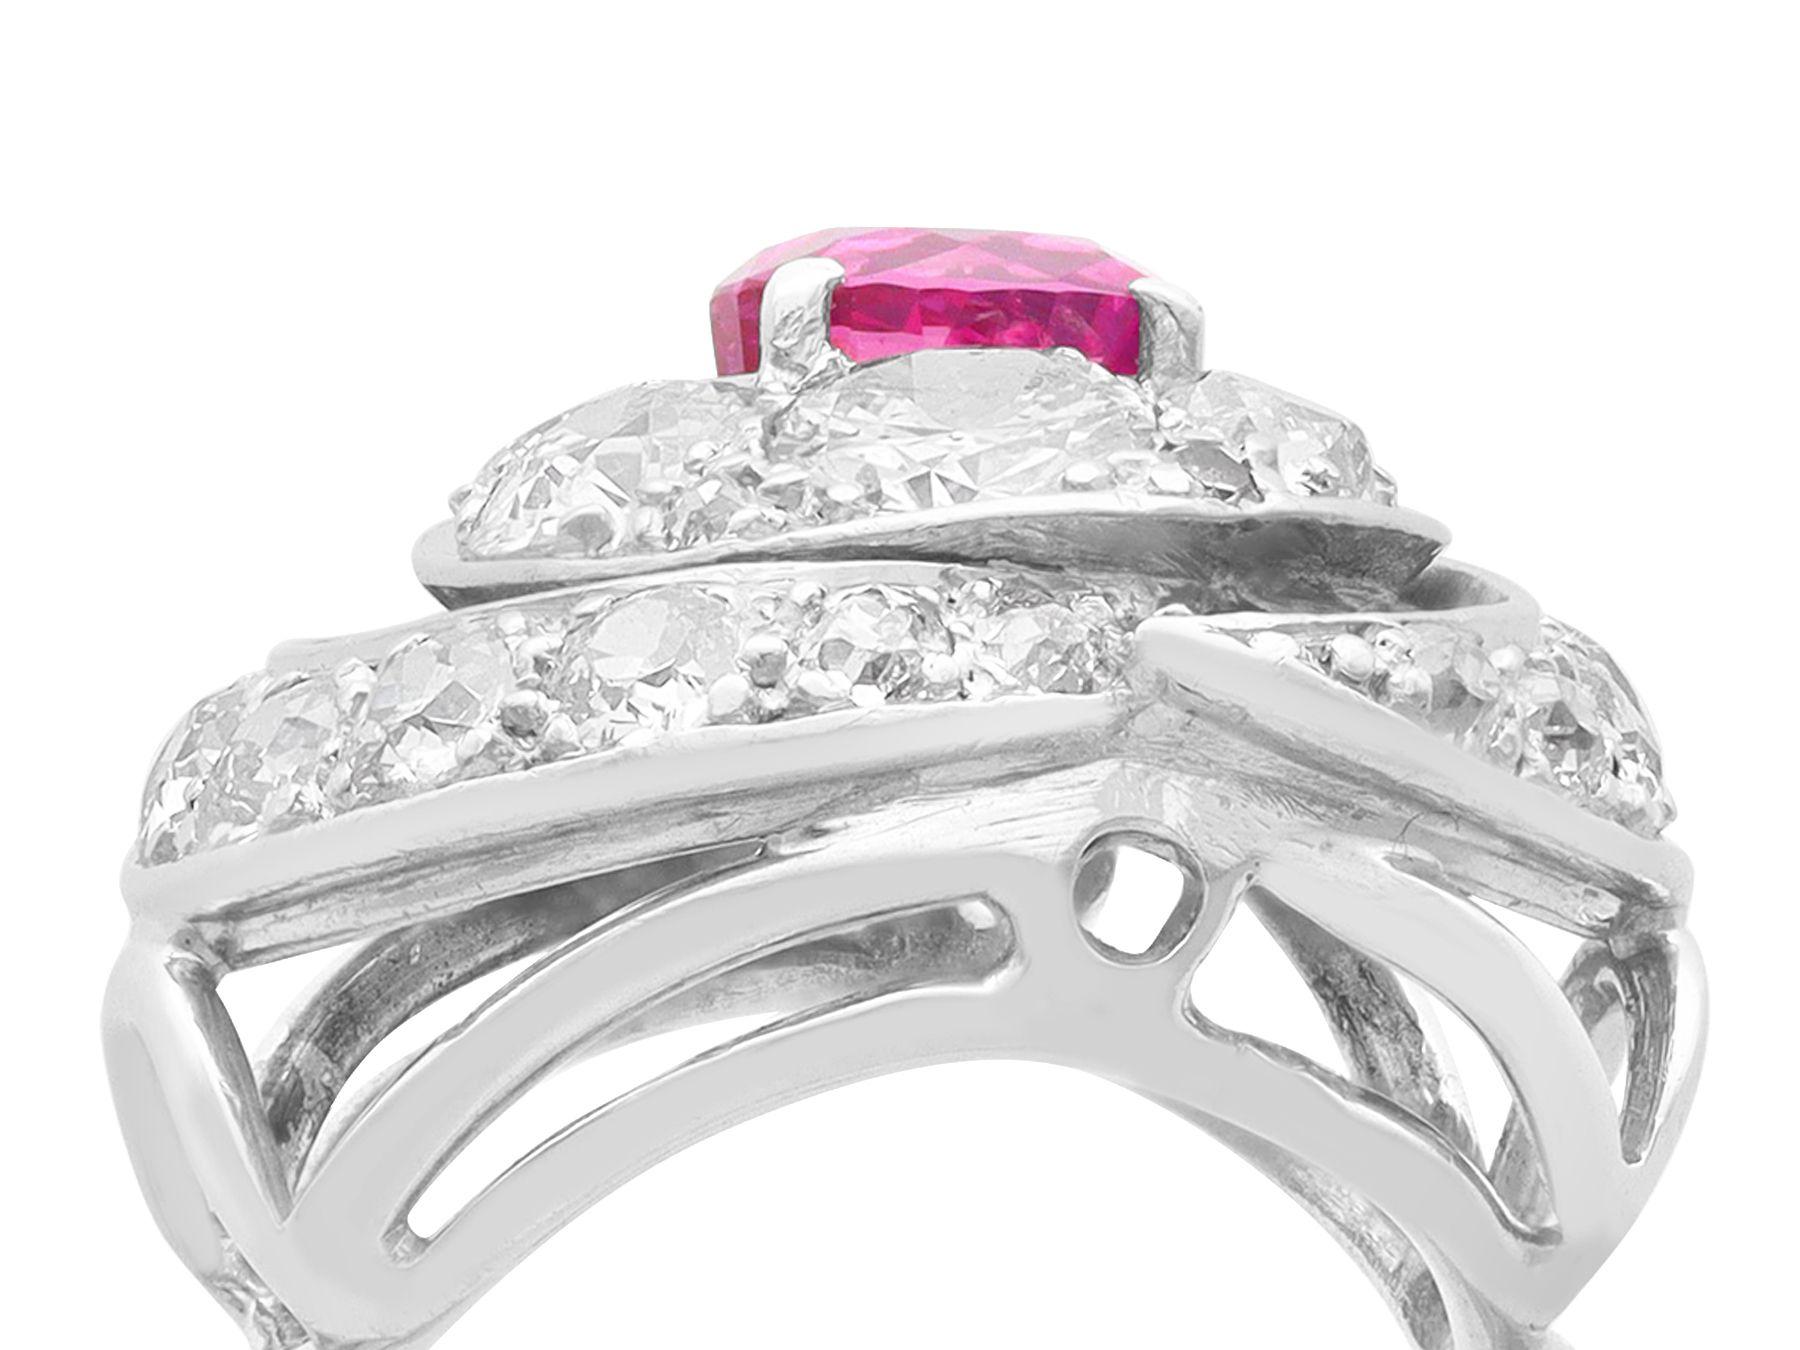 Ein atemberaubender Vintage-Ring aus 18 Karat Weißgold mit 1,22 Karat rosa Saphir und 2,73 Karat Diamant; Teil unserer vielfältigen Vintage- und Nachlass-Schmuckkollektionen

Dieser schöne und beeindruckende Vintage-Ring mit Saphiren und Diamanten